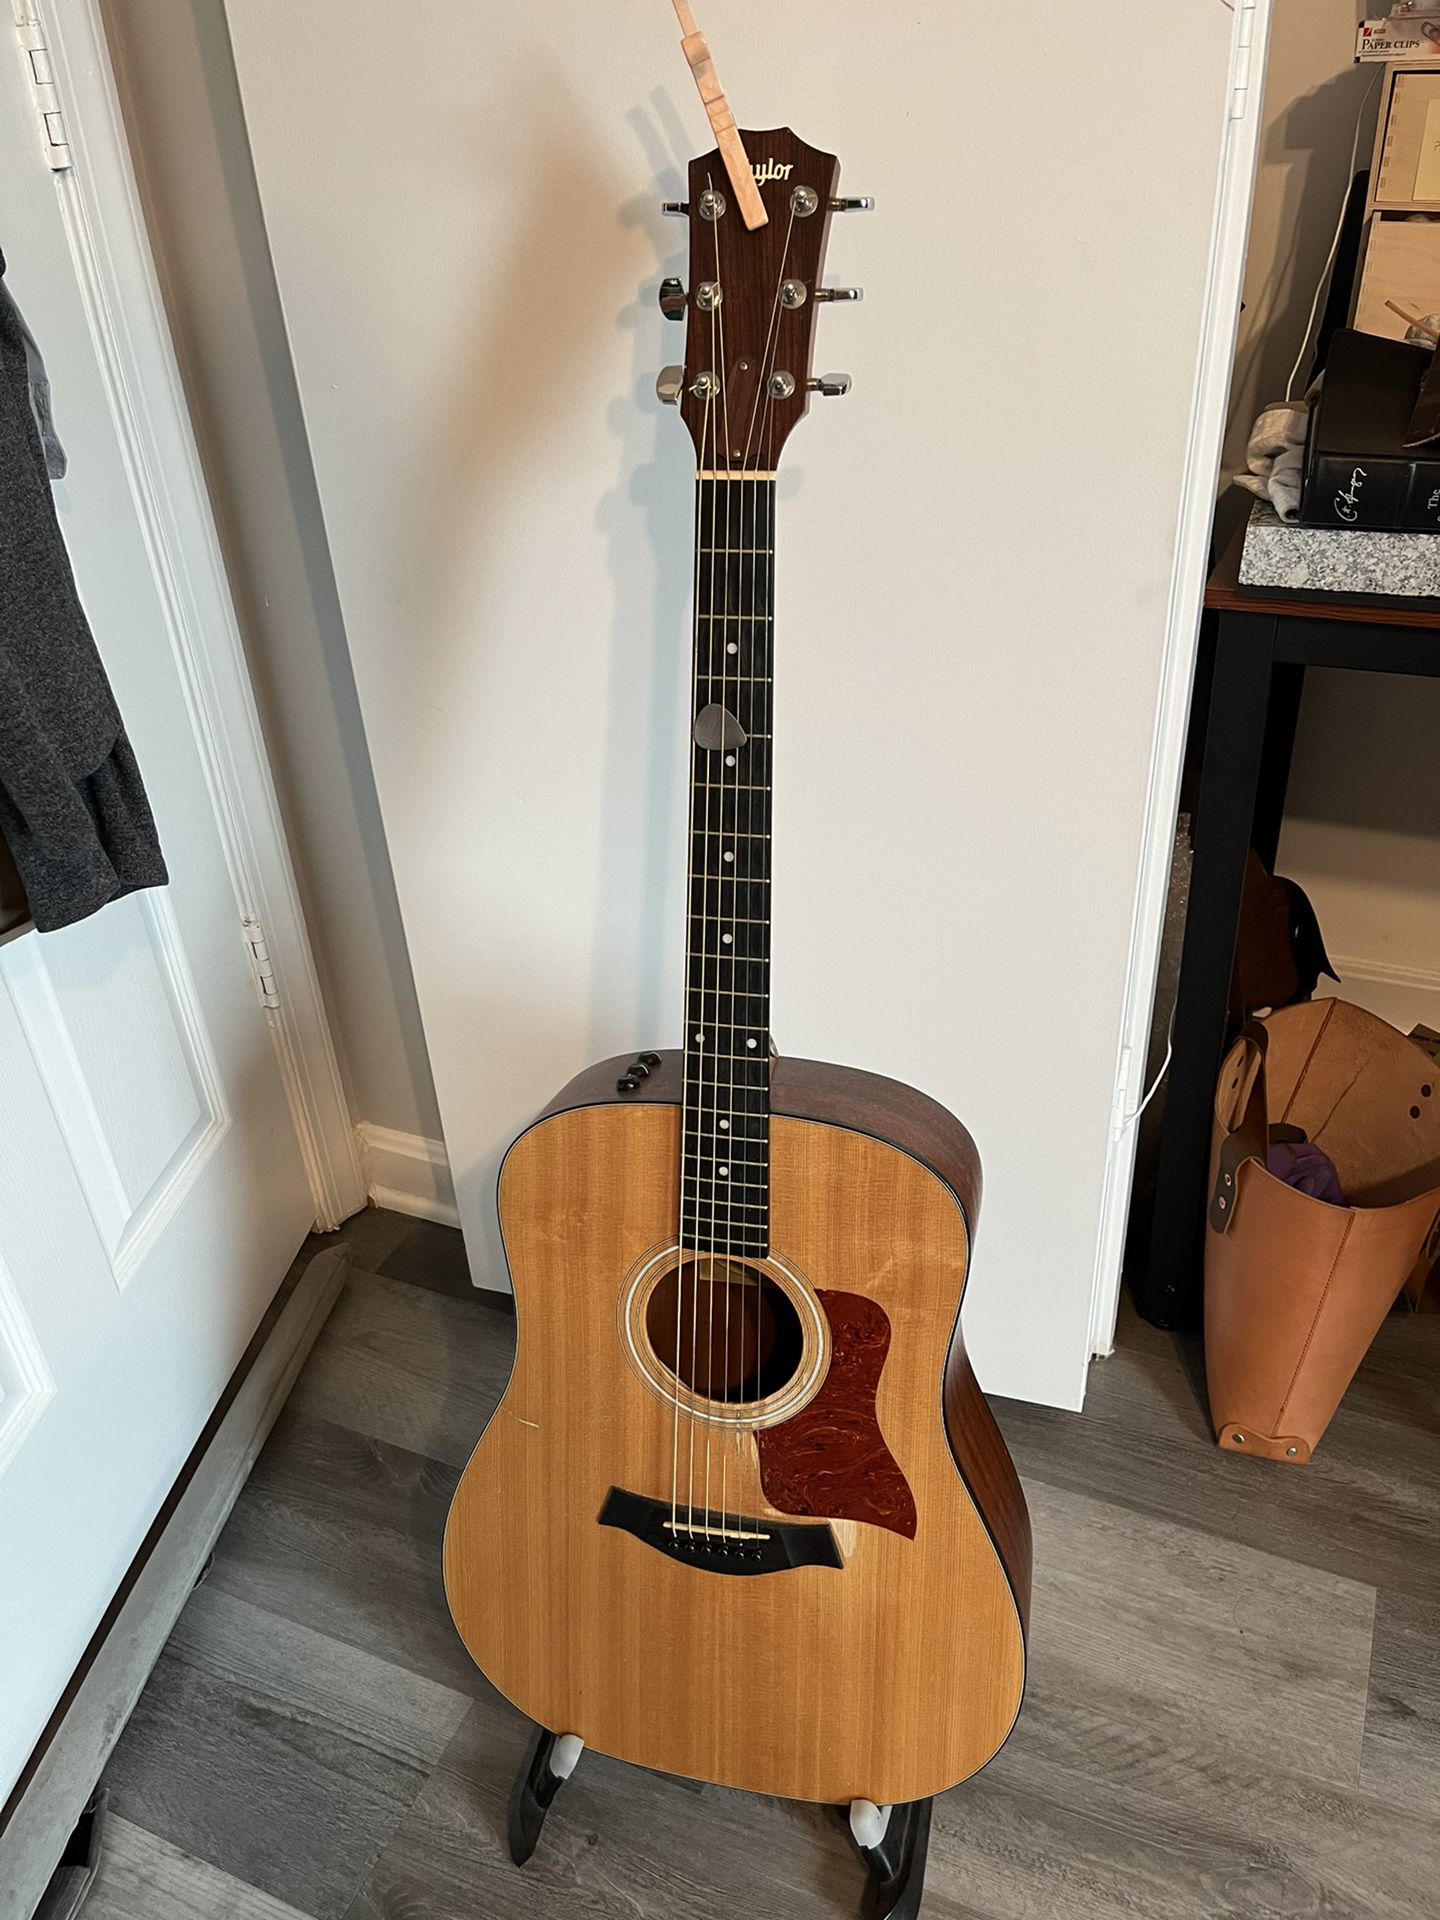 Taylor 110e Acoustic Guitar